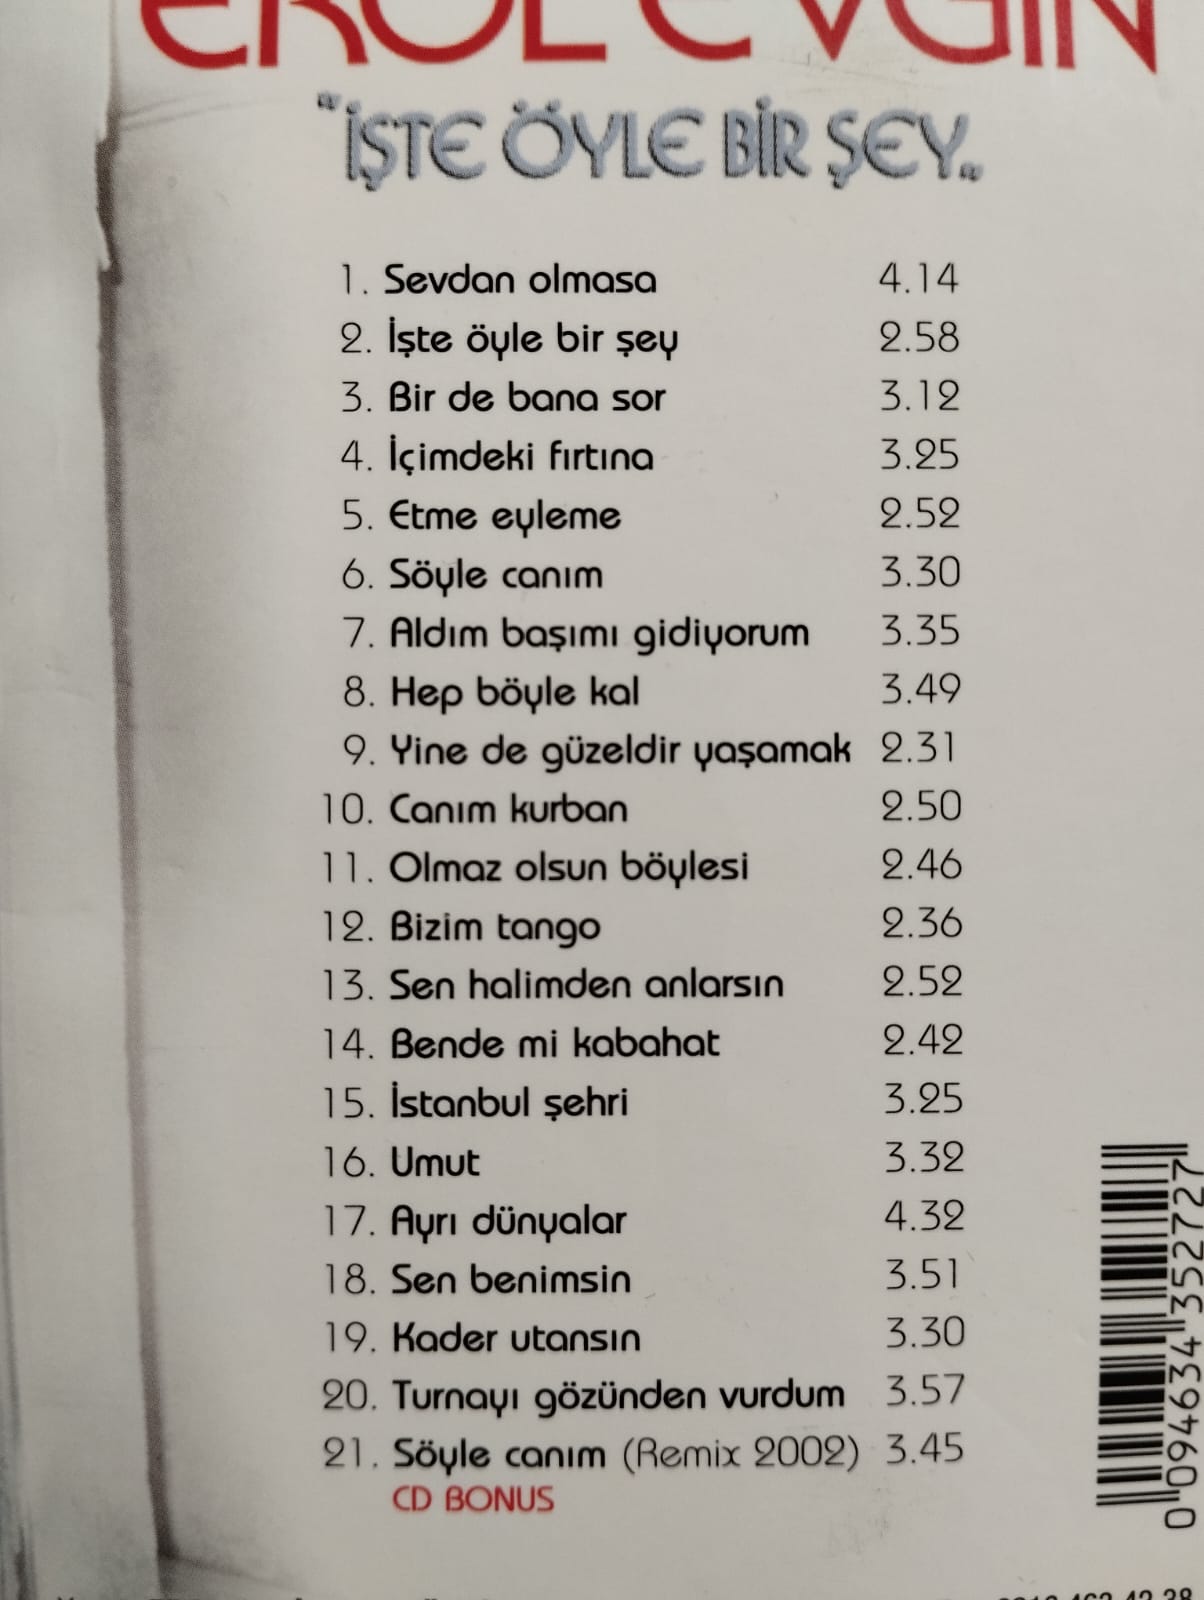 Erol Evgin - İşte Öyle Bir Şey - 2005 Türkiye Basım 2. El CD Albüm